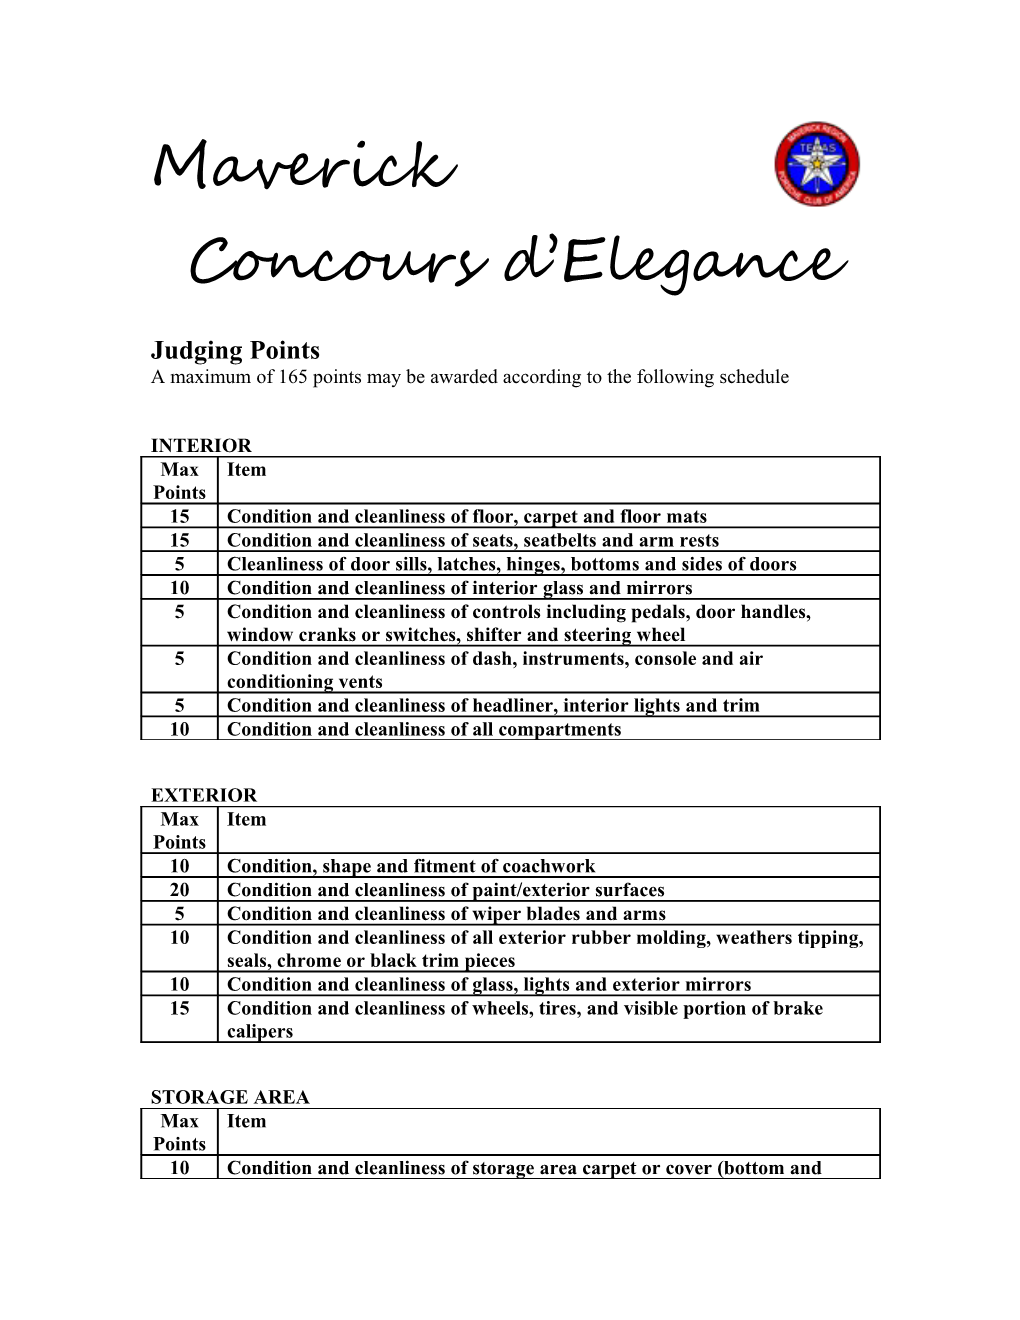 Maverick Concours D Elegance